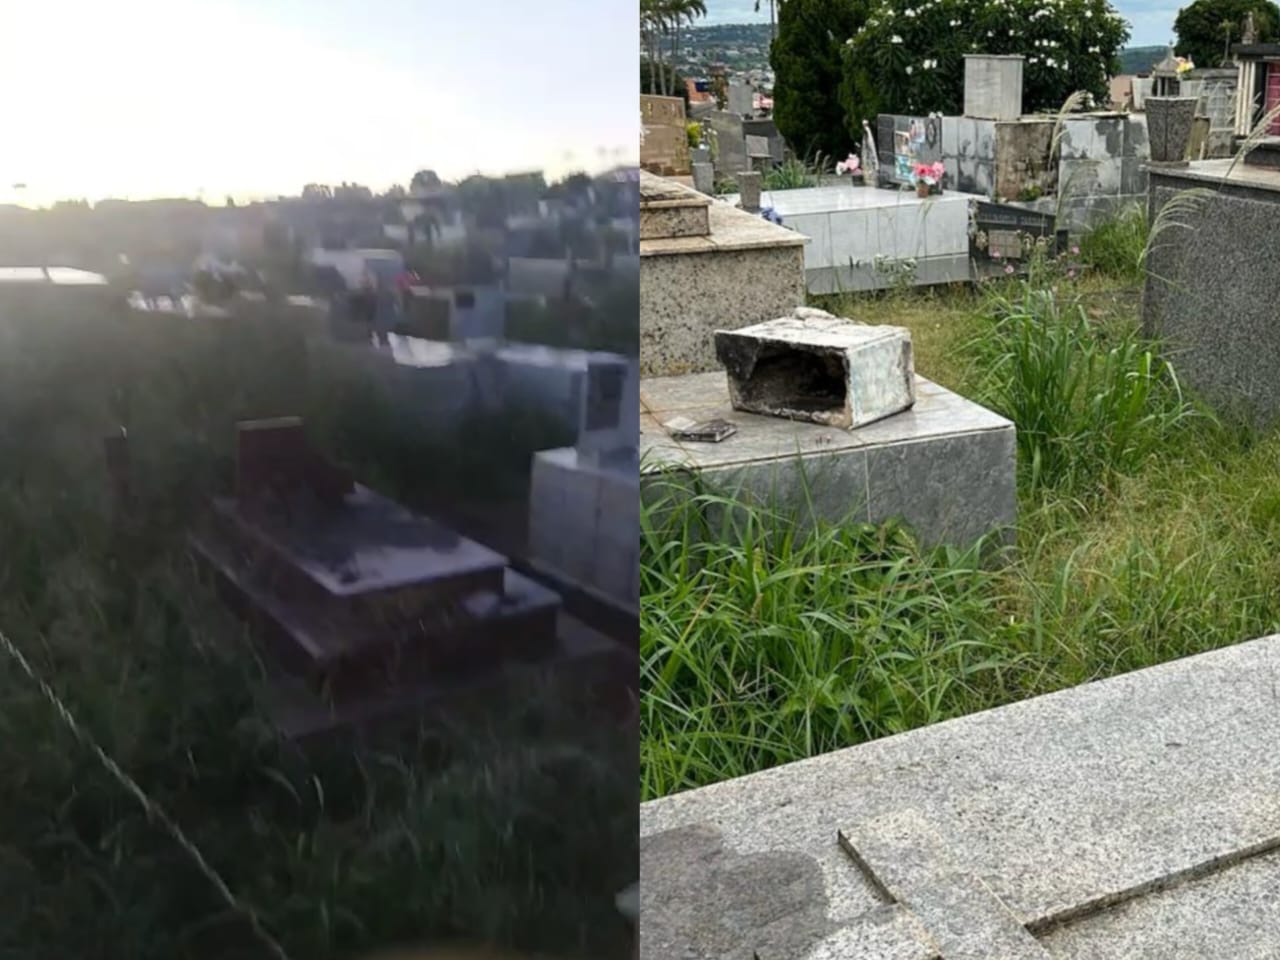 Escorpiões e lacraias invadem casas por falta de manutenção em cemitérios de Anápolis: “parece até abandonado”